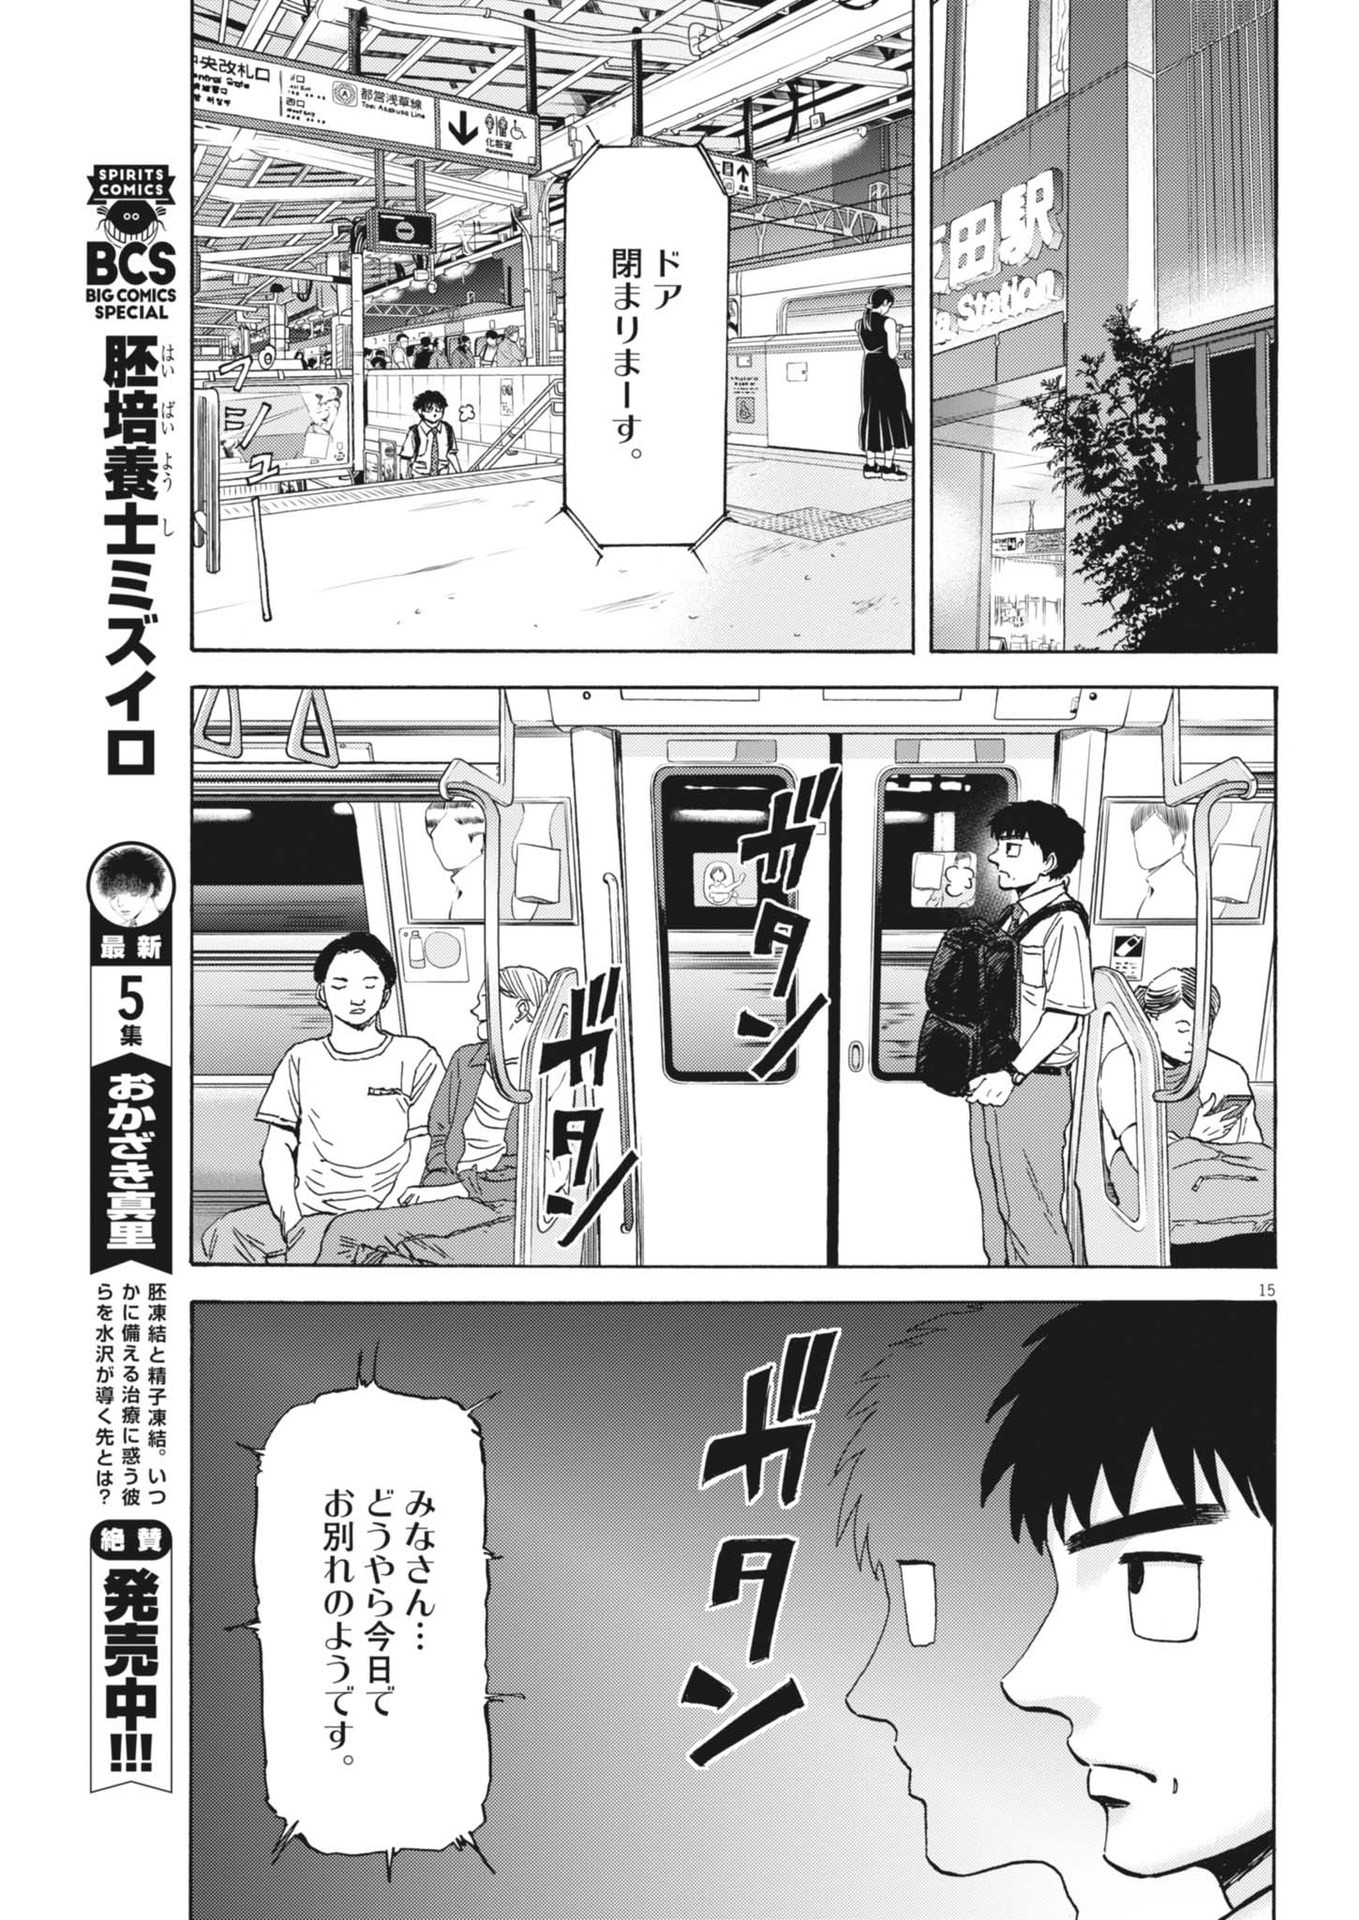 Robou no Fujii – Idai Naru Bonjin kara no Tayori - Chapter 27 - Page 15